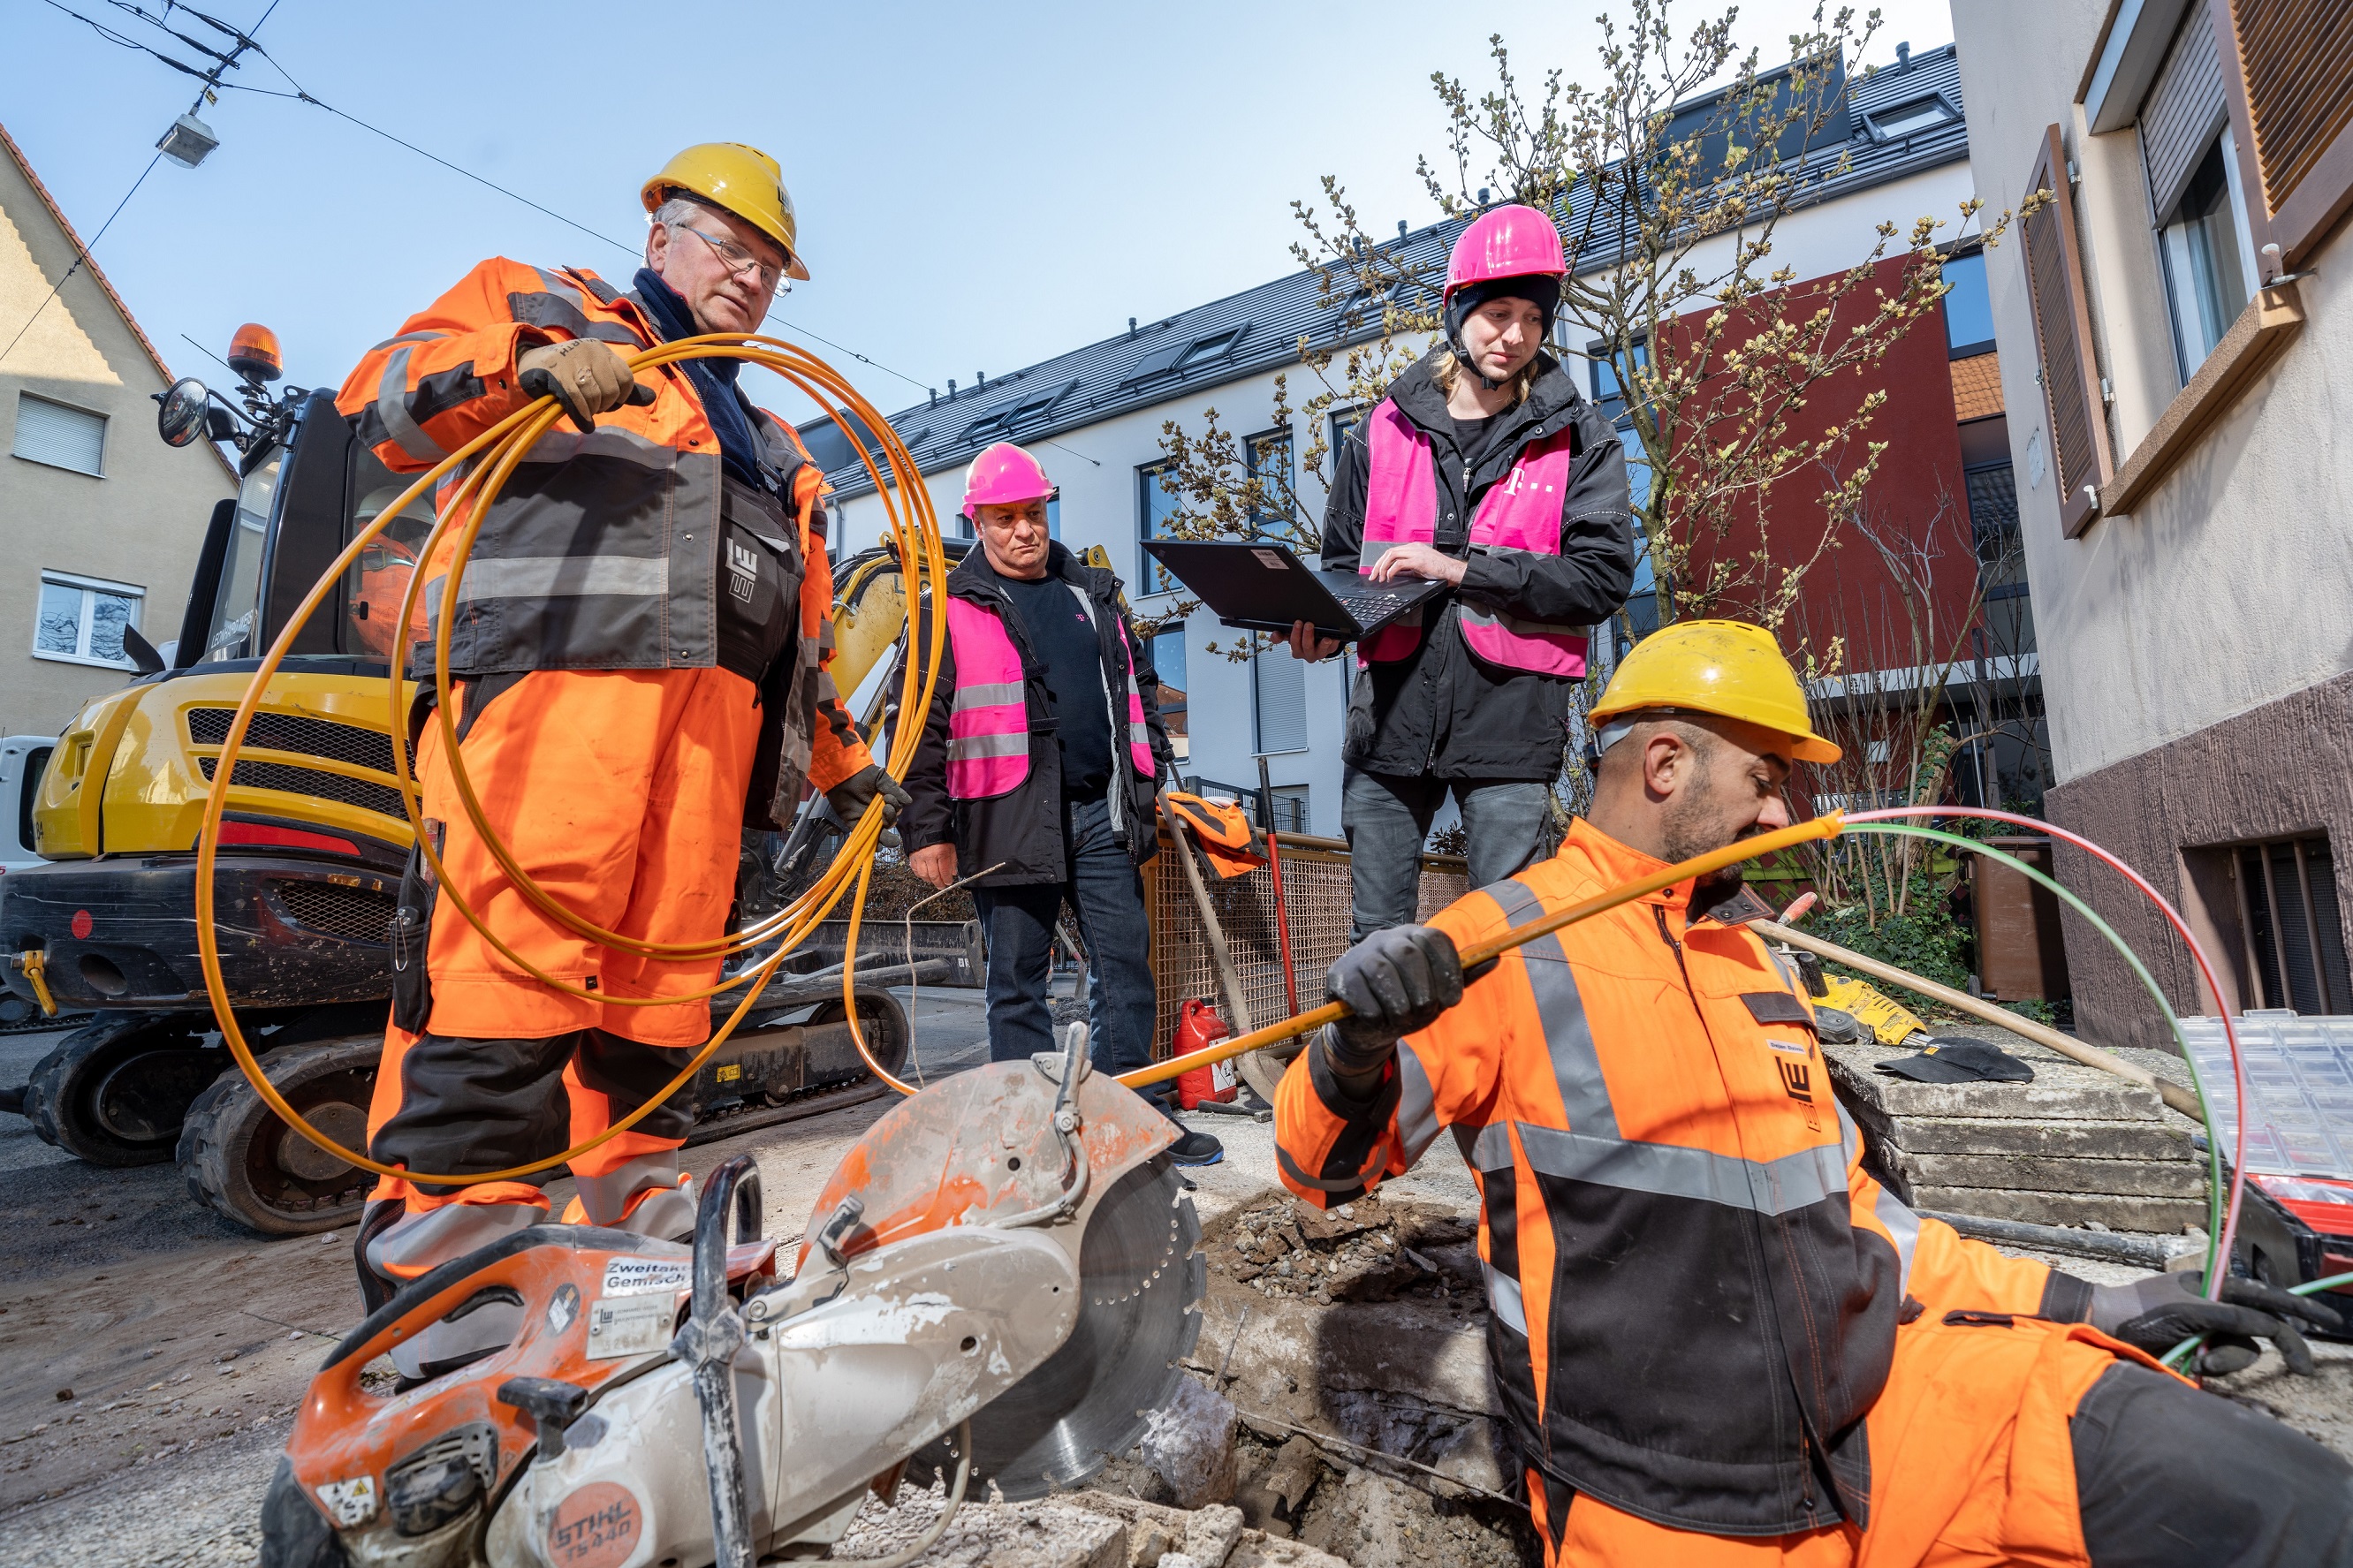 Baubegleiter der Telekom überprüft die Fortschritte an Glasfaser-Baustelle.
Bild: Deutsche Telekom